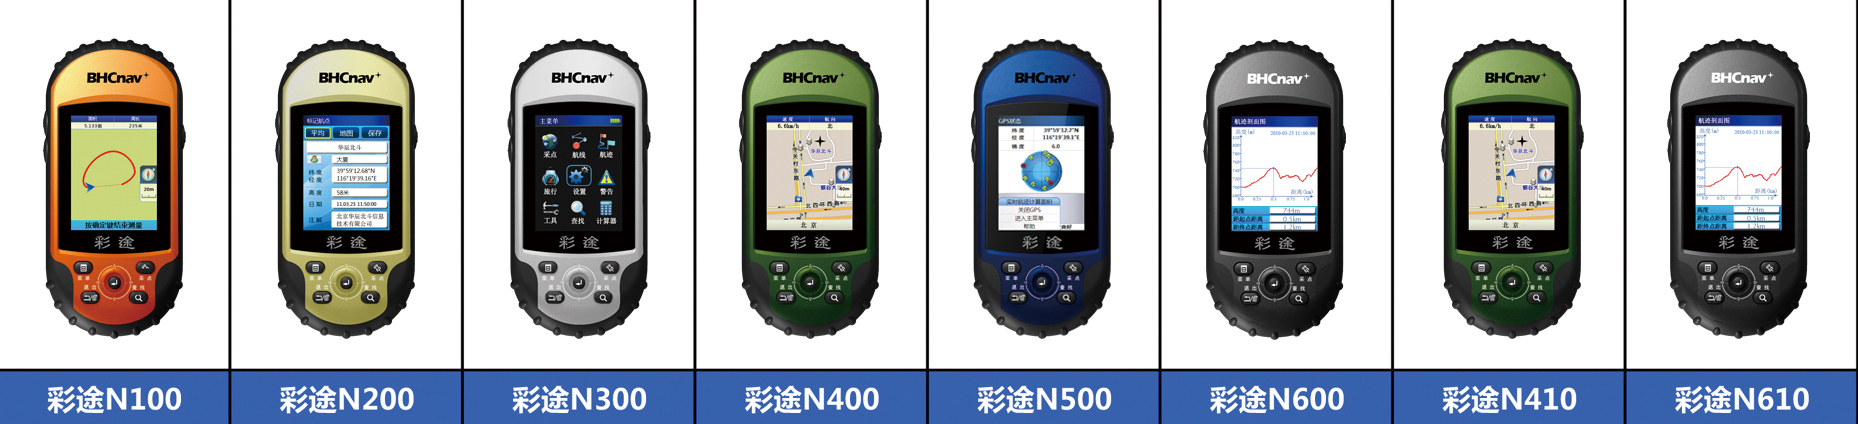 Handheld GPS   NAVA400